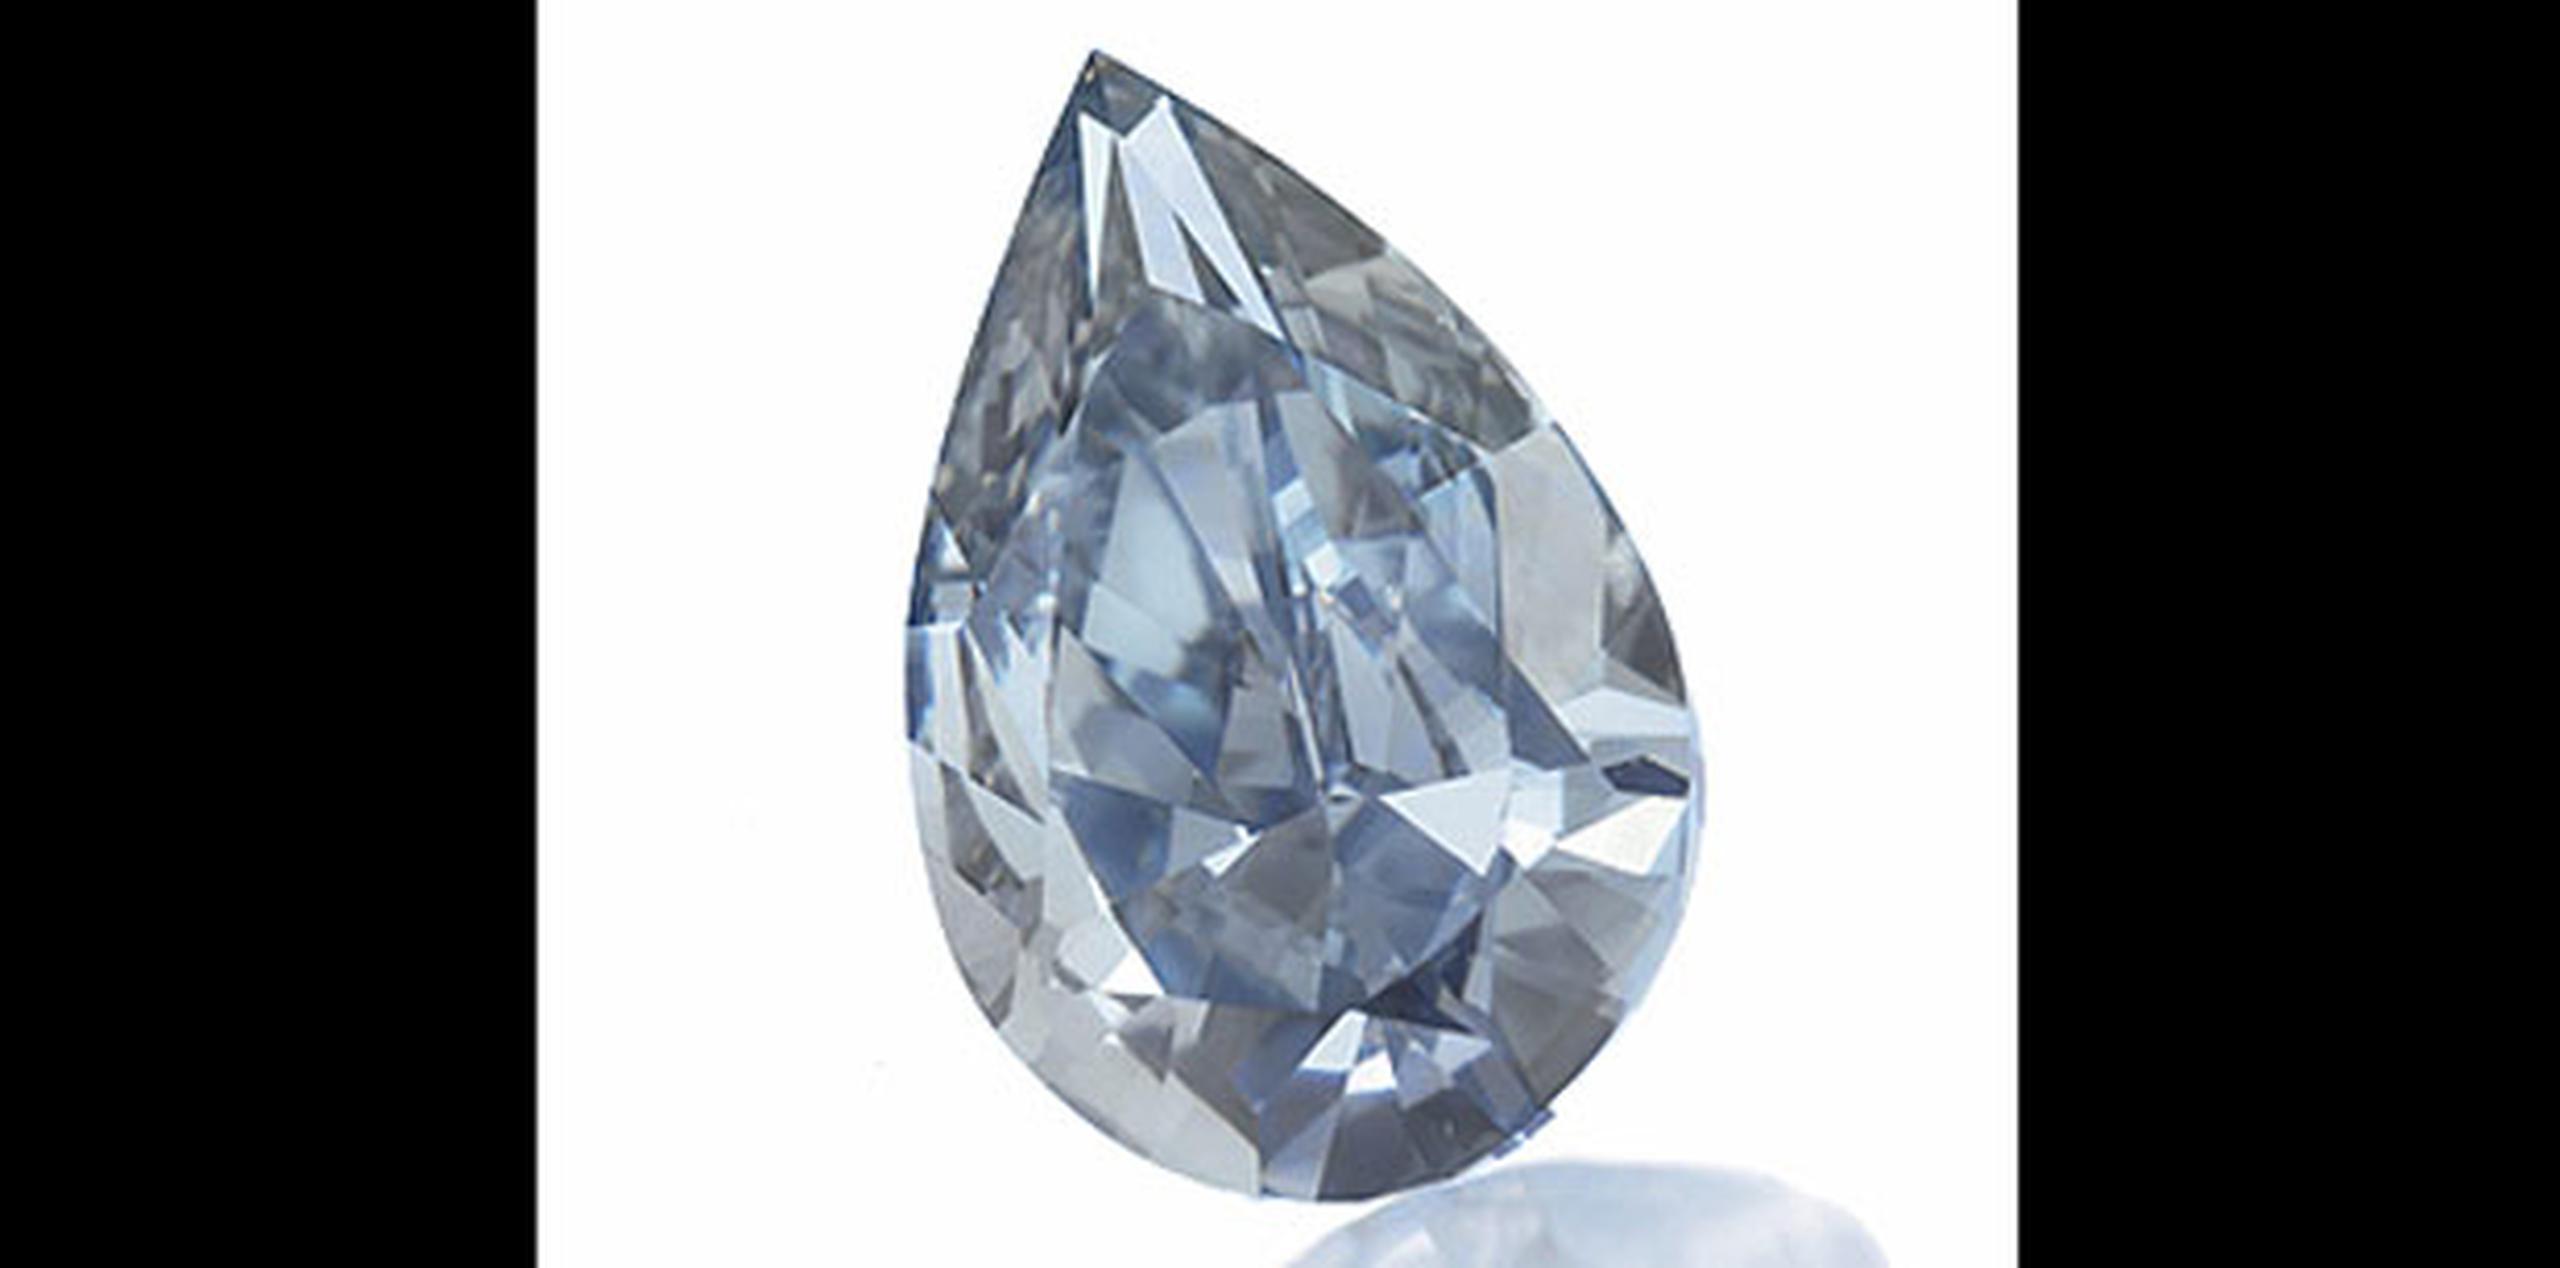 También se robaron una máquina para determinar la pureza de los diamantes. (Archivo)